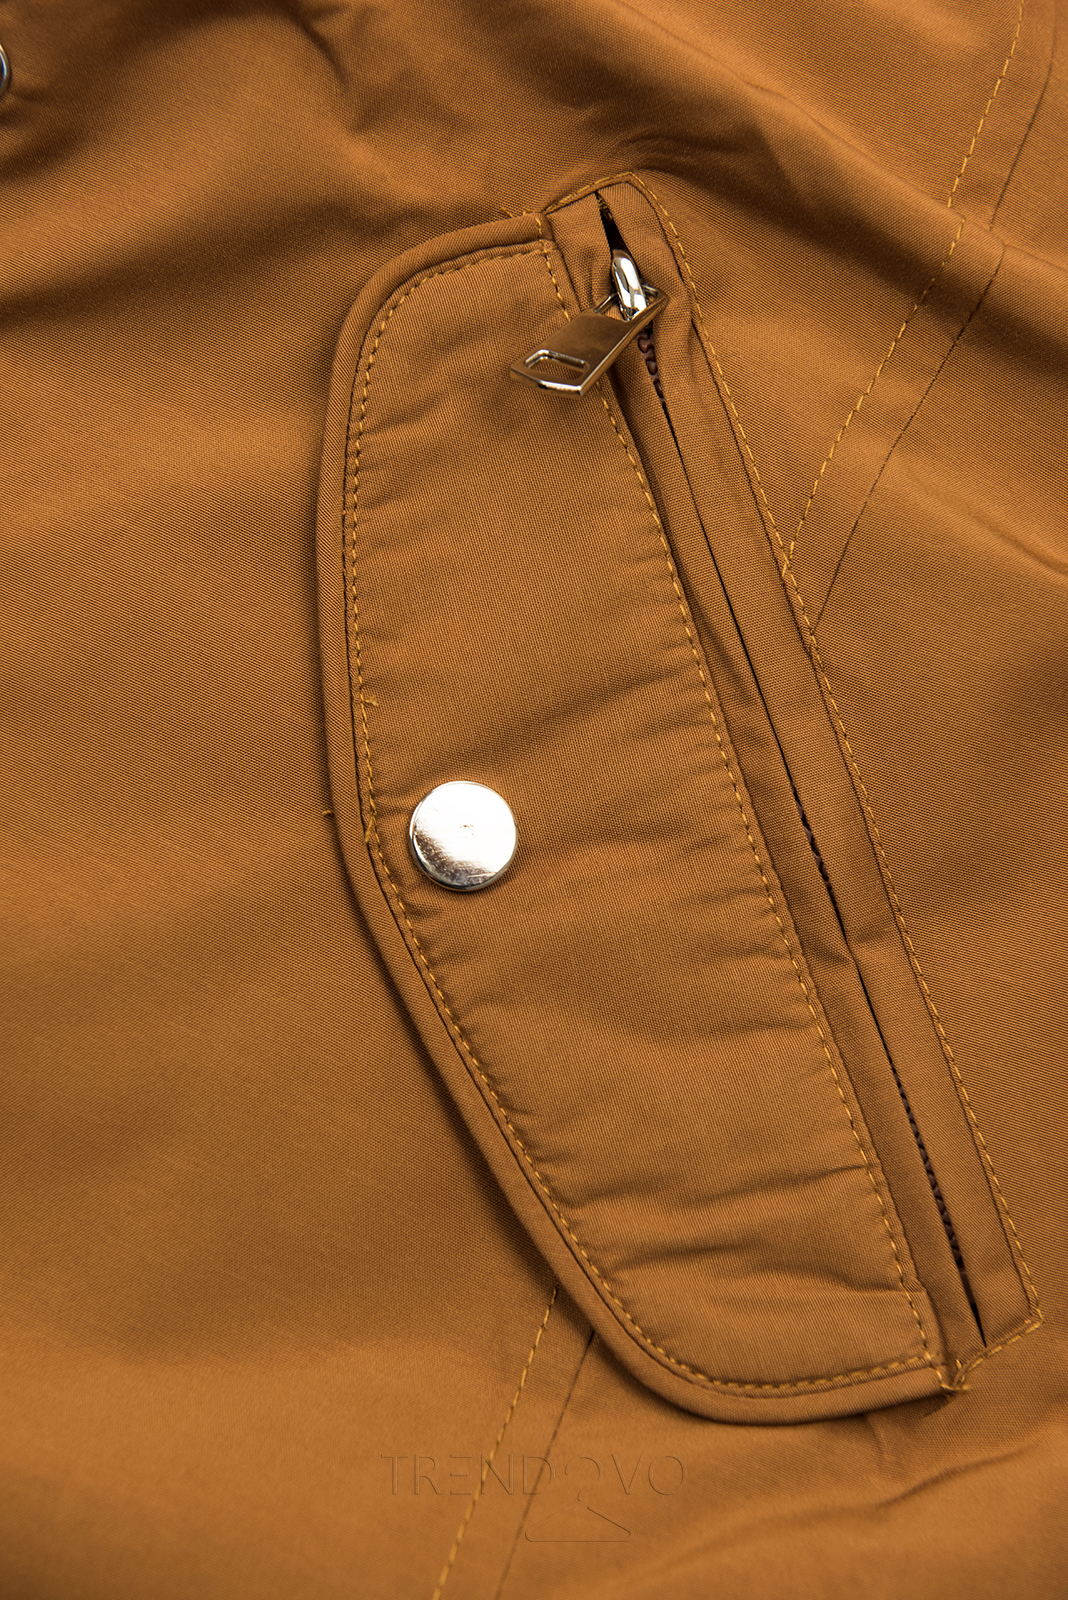 Hnedá obojstranná bunda s pepito vzorom